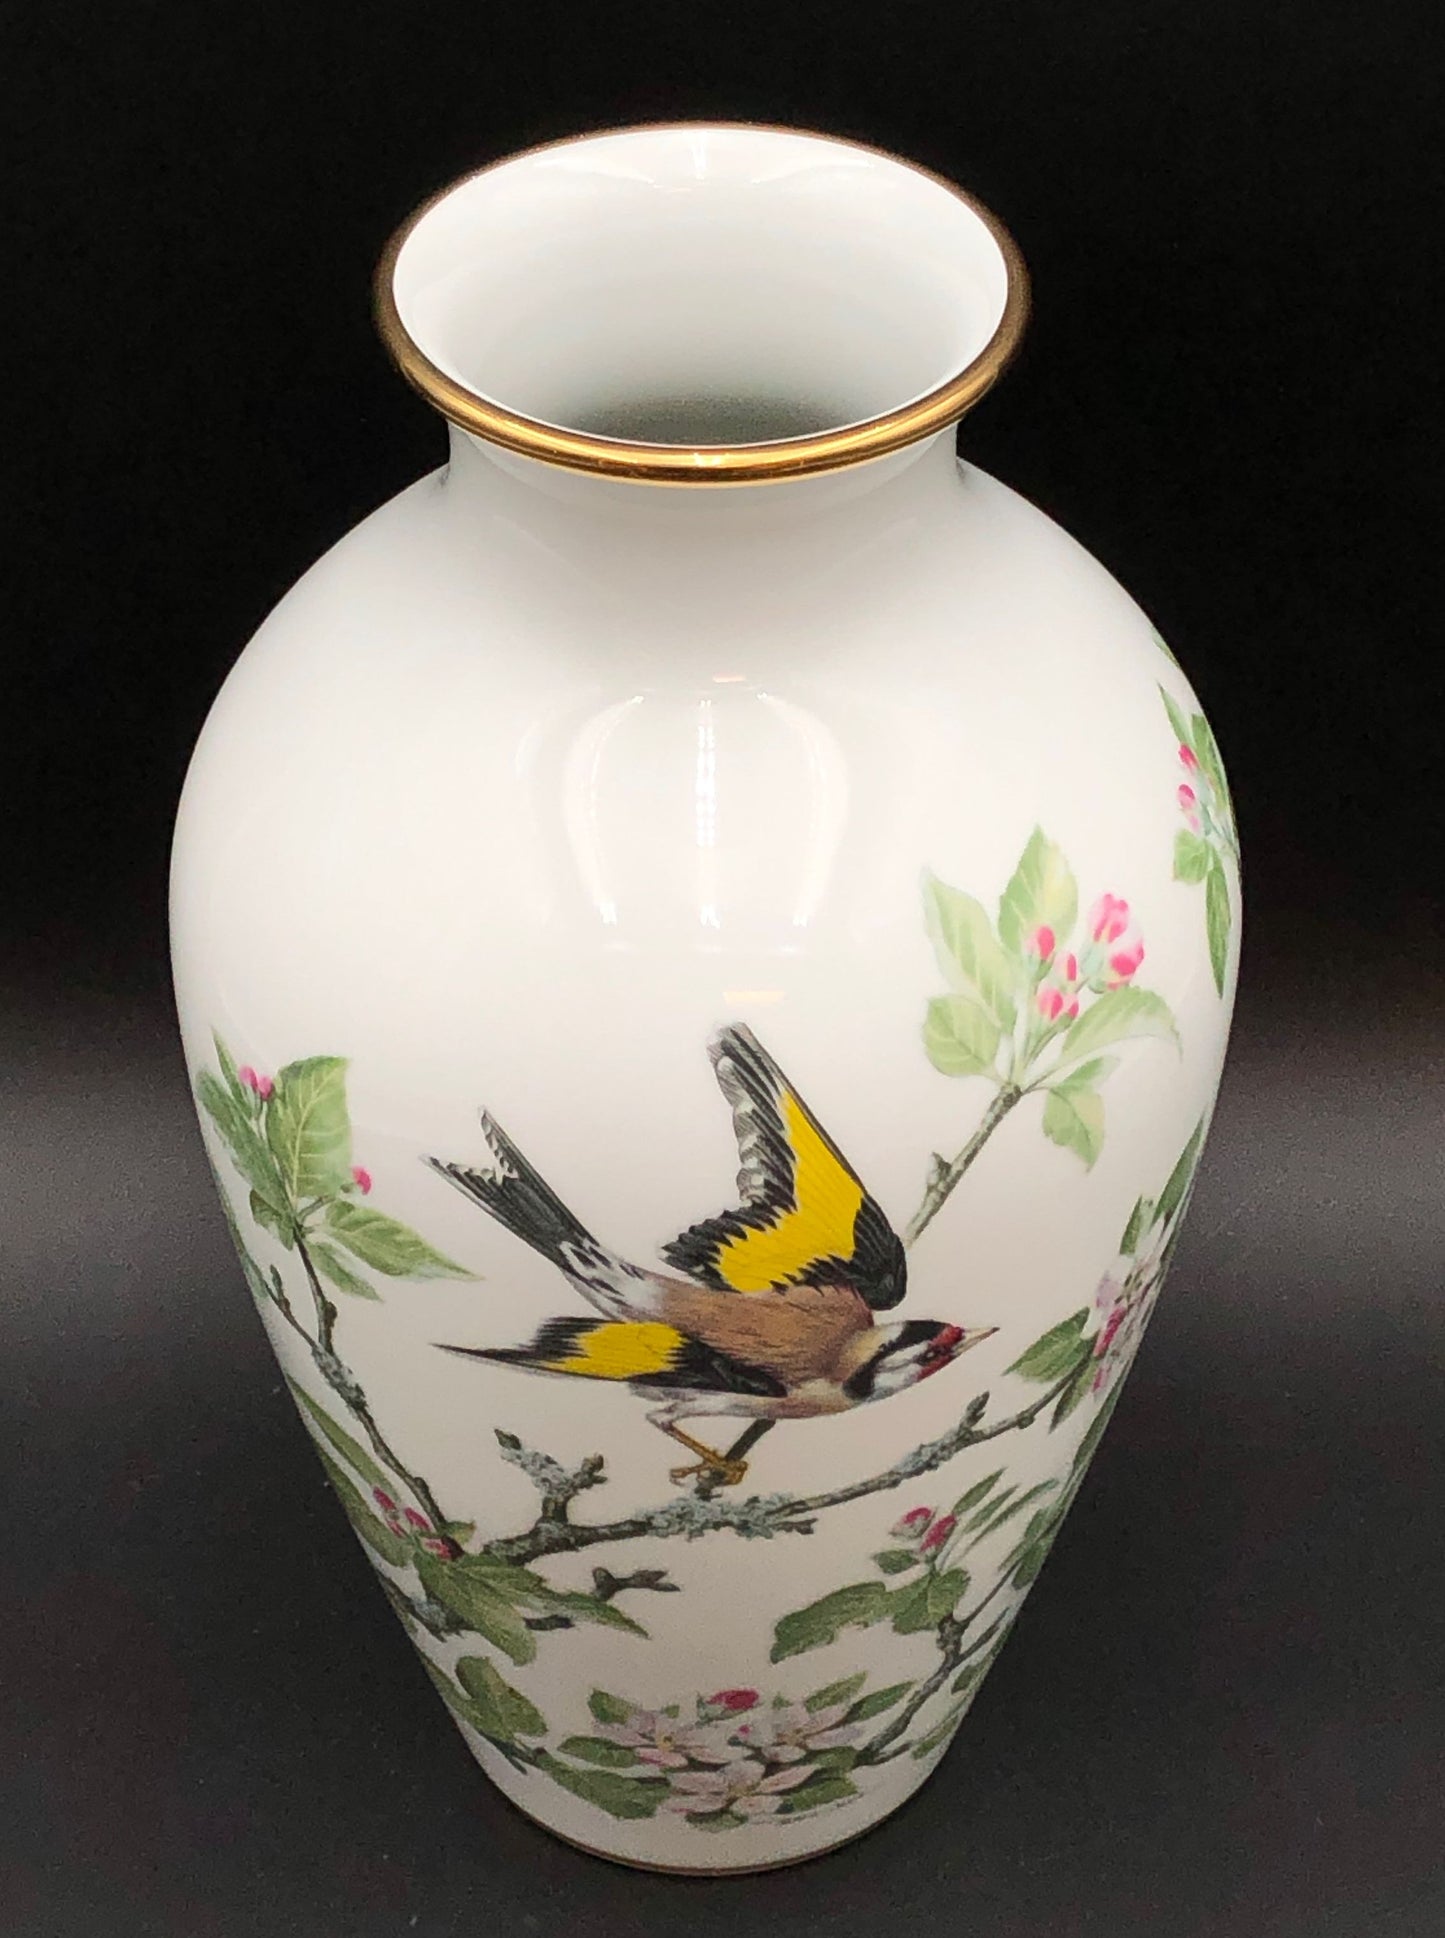 "The Woodland Bird Vase" By Basil Ede - Franklin Porcelain 1981 Limited Edition